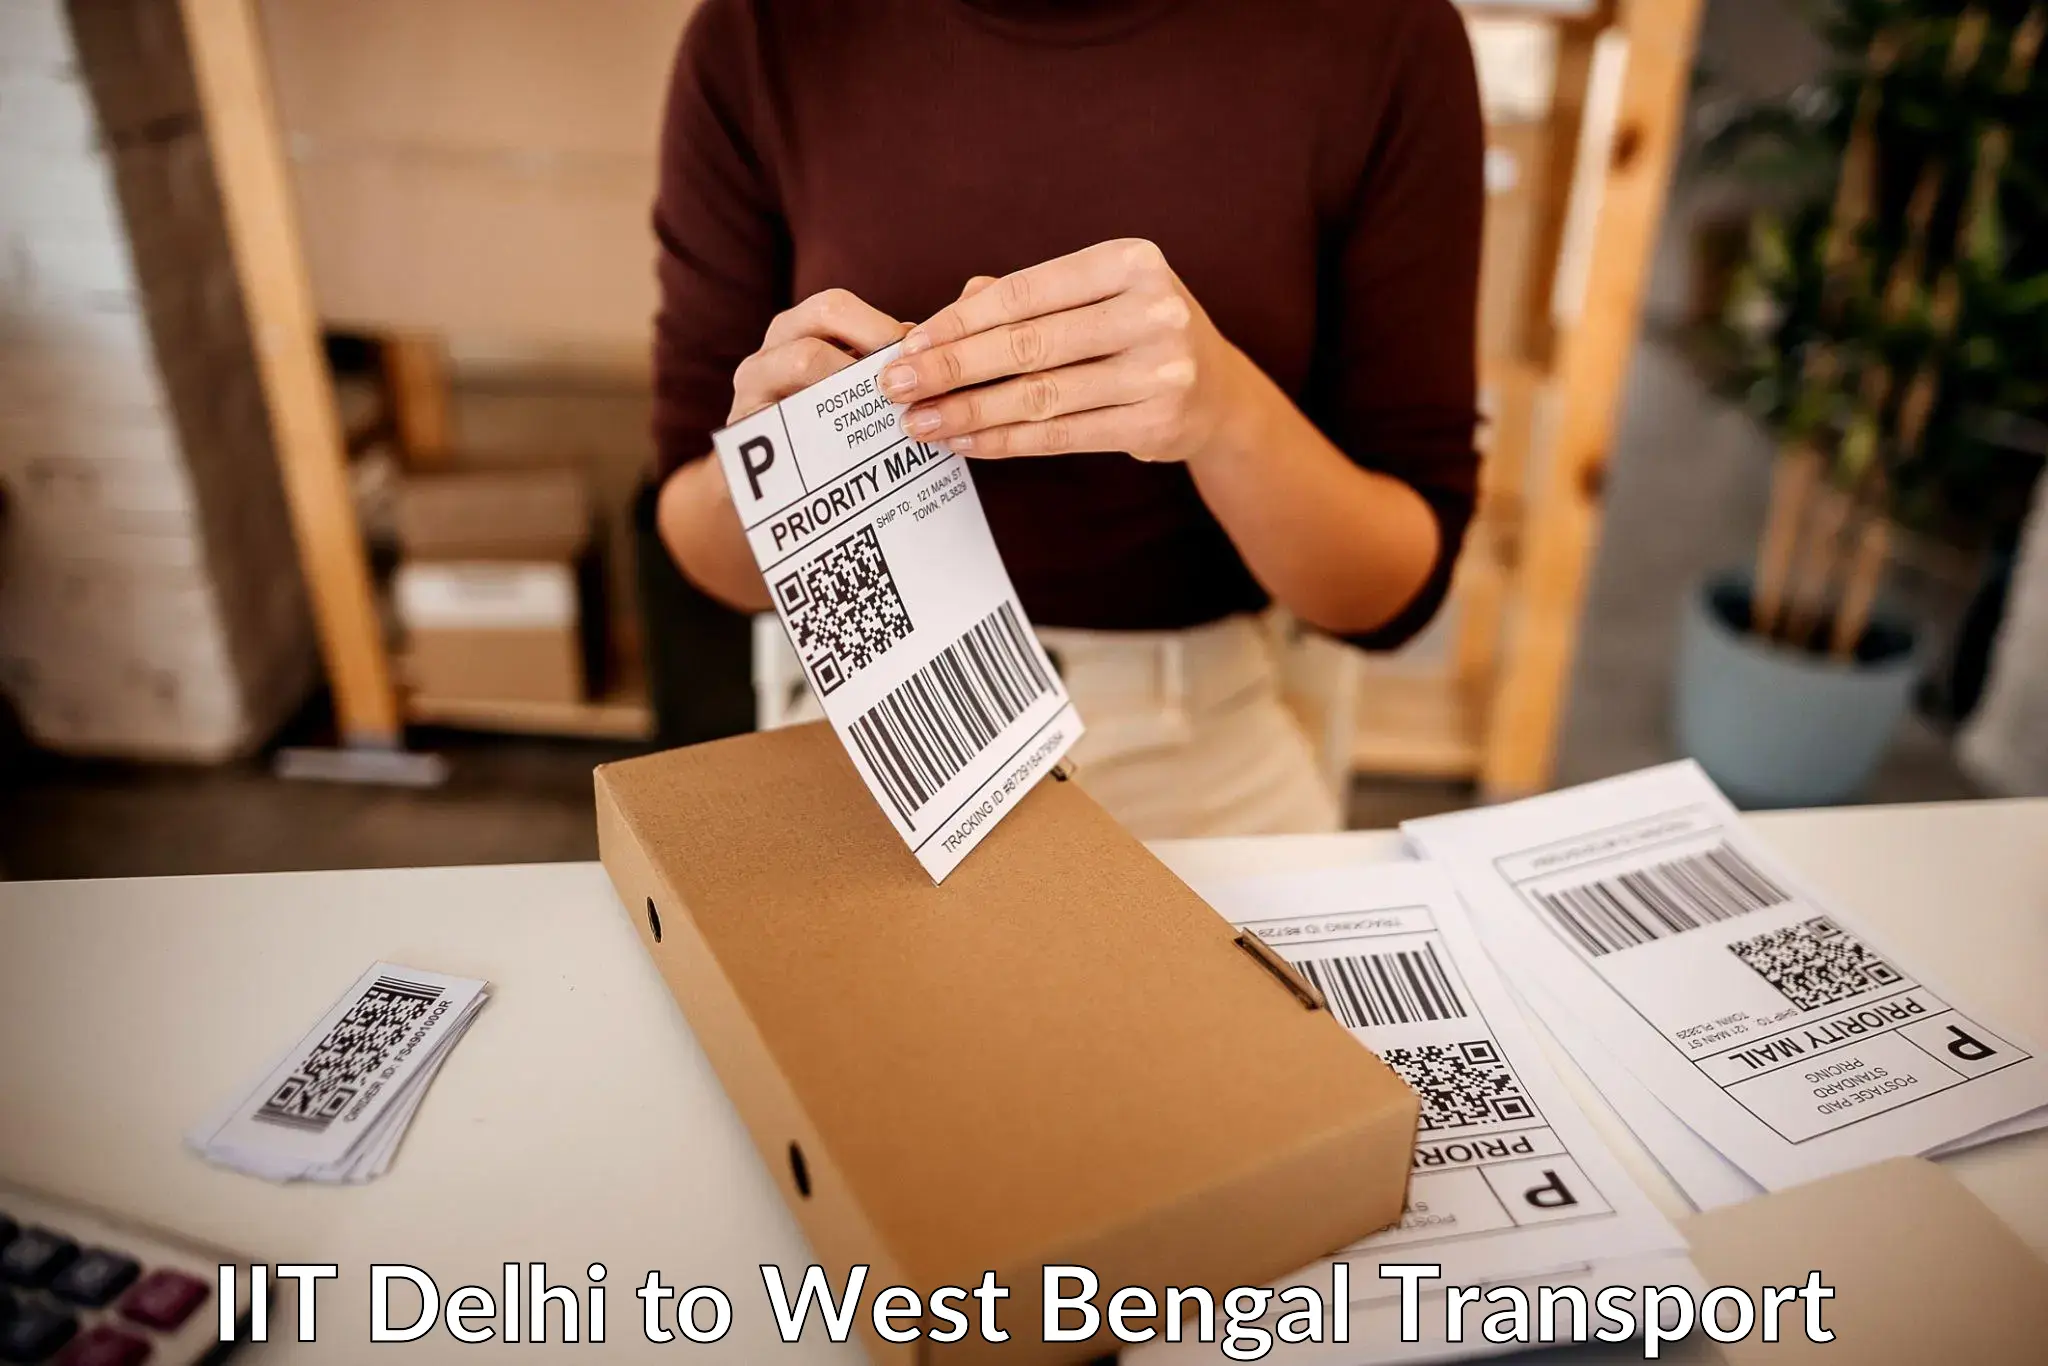 Online transport service IIT Delhi to Alipore